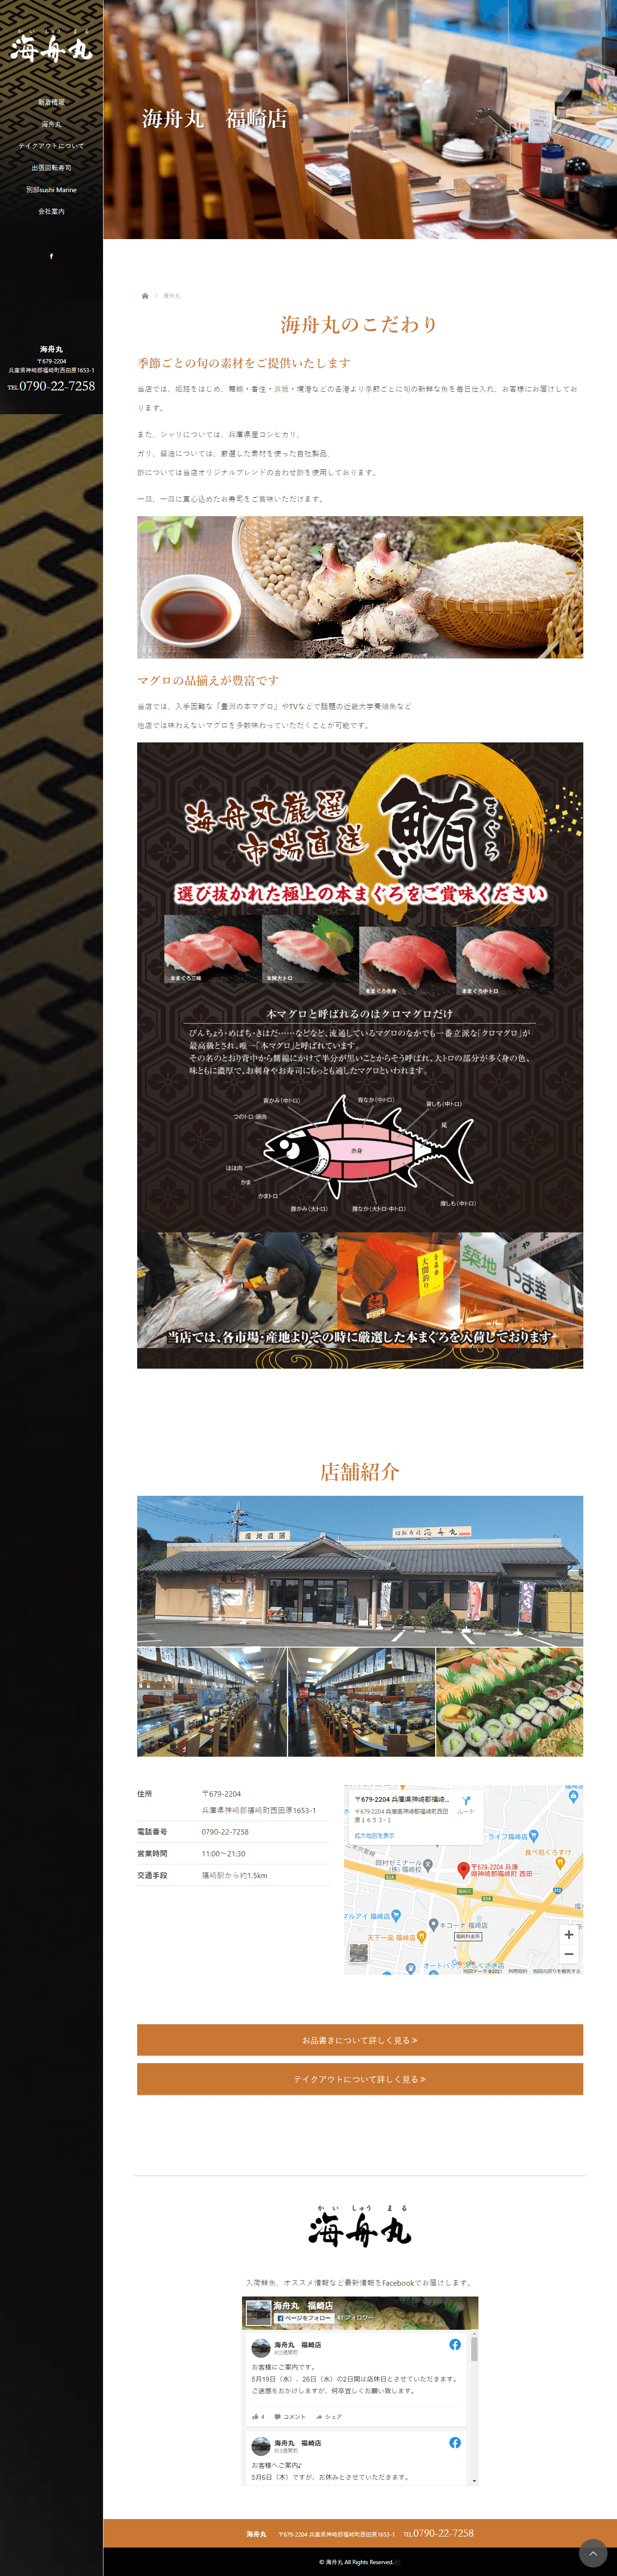 神崎郡 回転寿司 海舟丸 ホームページ制作2